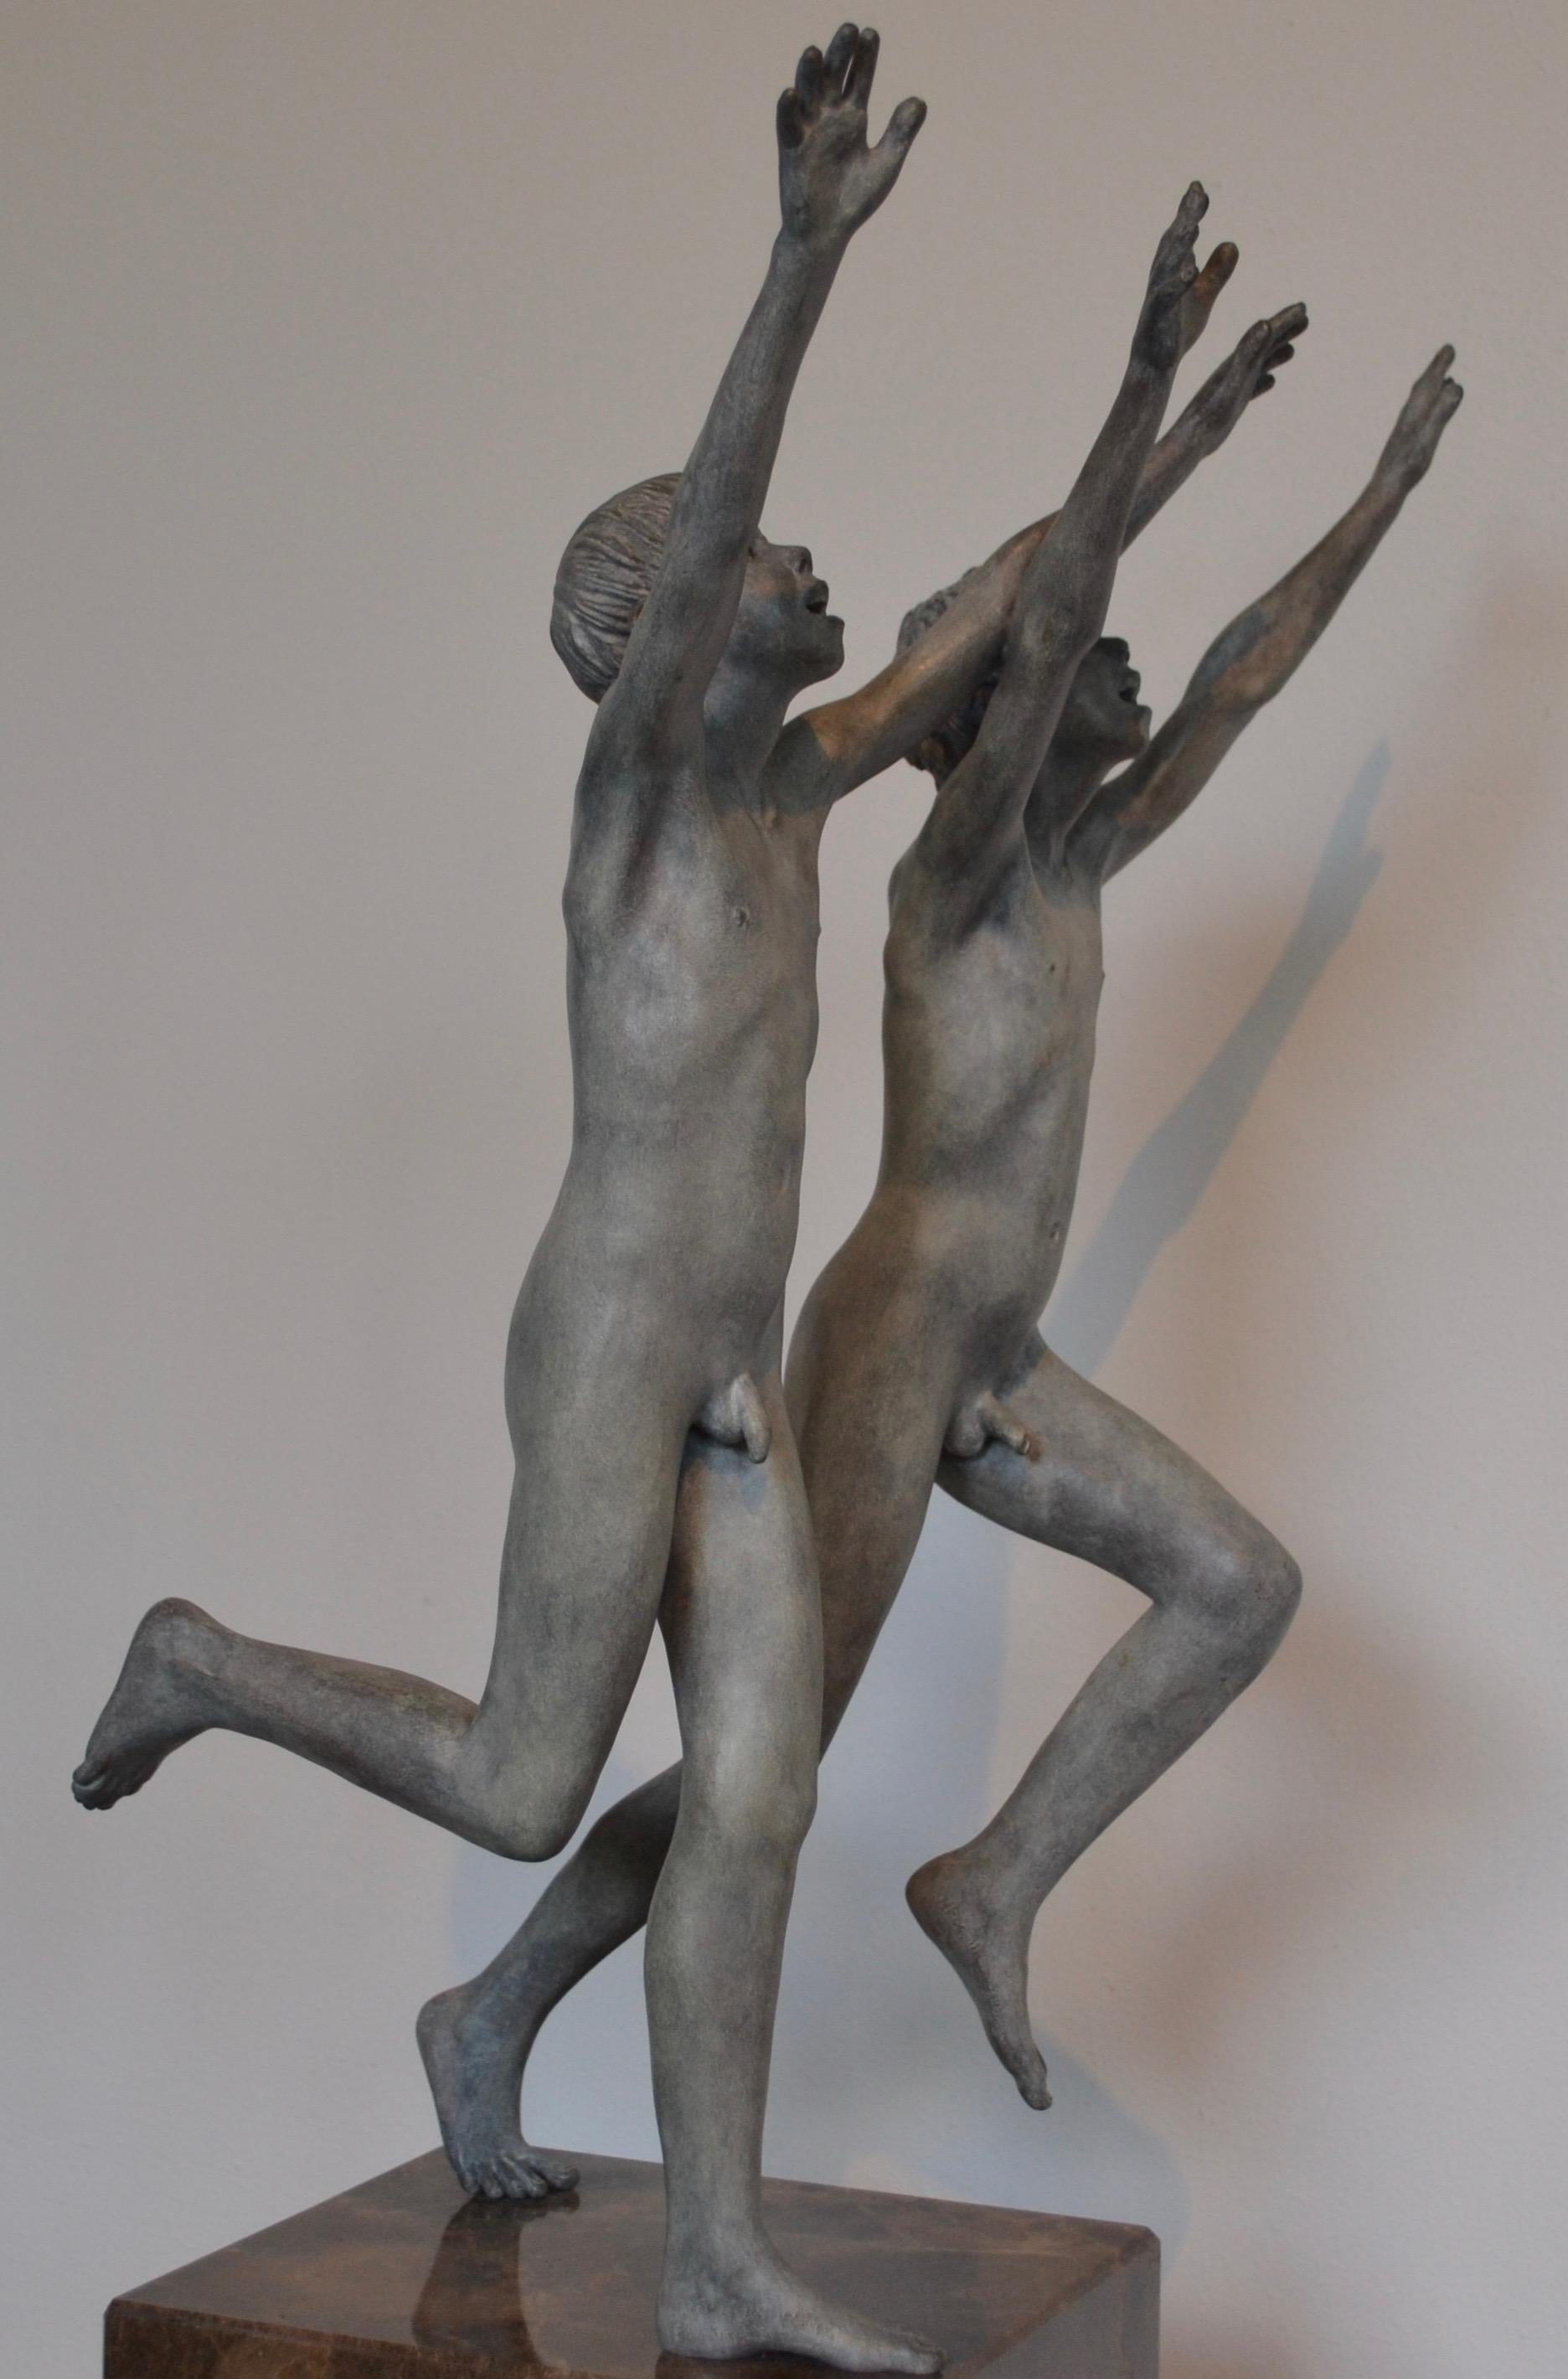 Cursus – zeitgenössische Bronzeskulptur zweier nackter laufender Jungen aus dem 21. Jahrhundert (Gold), Figurative Sculpture, von Wim van der Kant